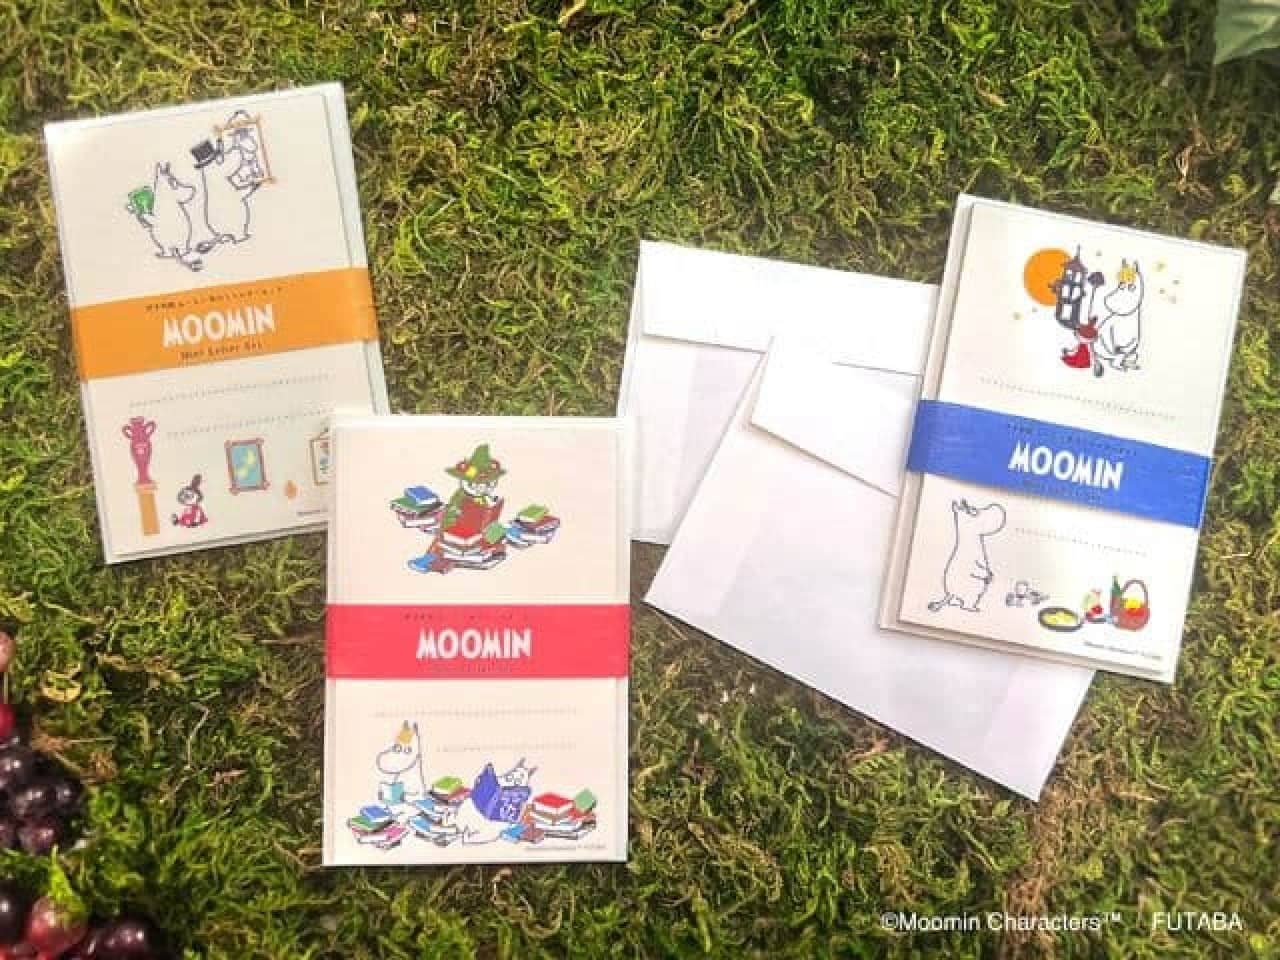 Post Office "Moomin Seasonal Iyo Washi Goods Autumn